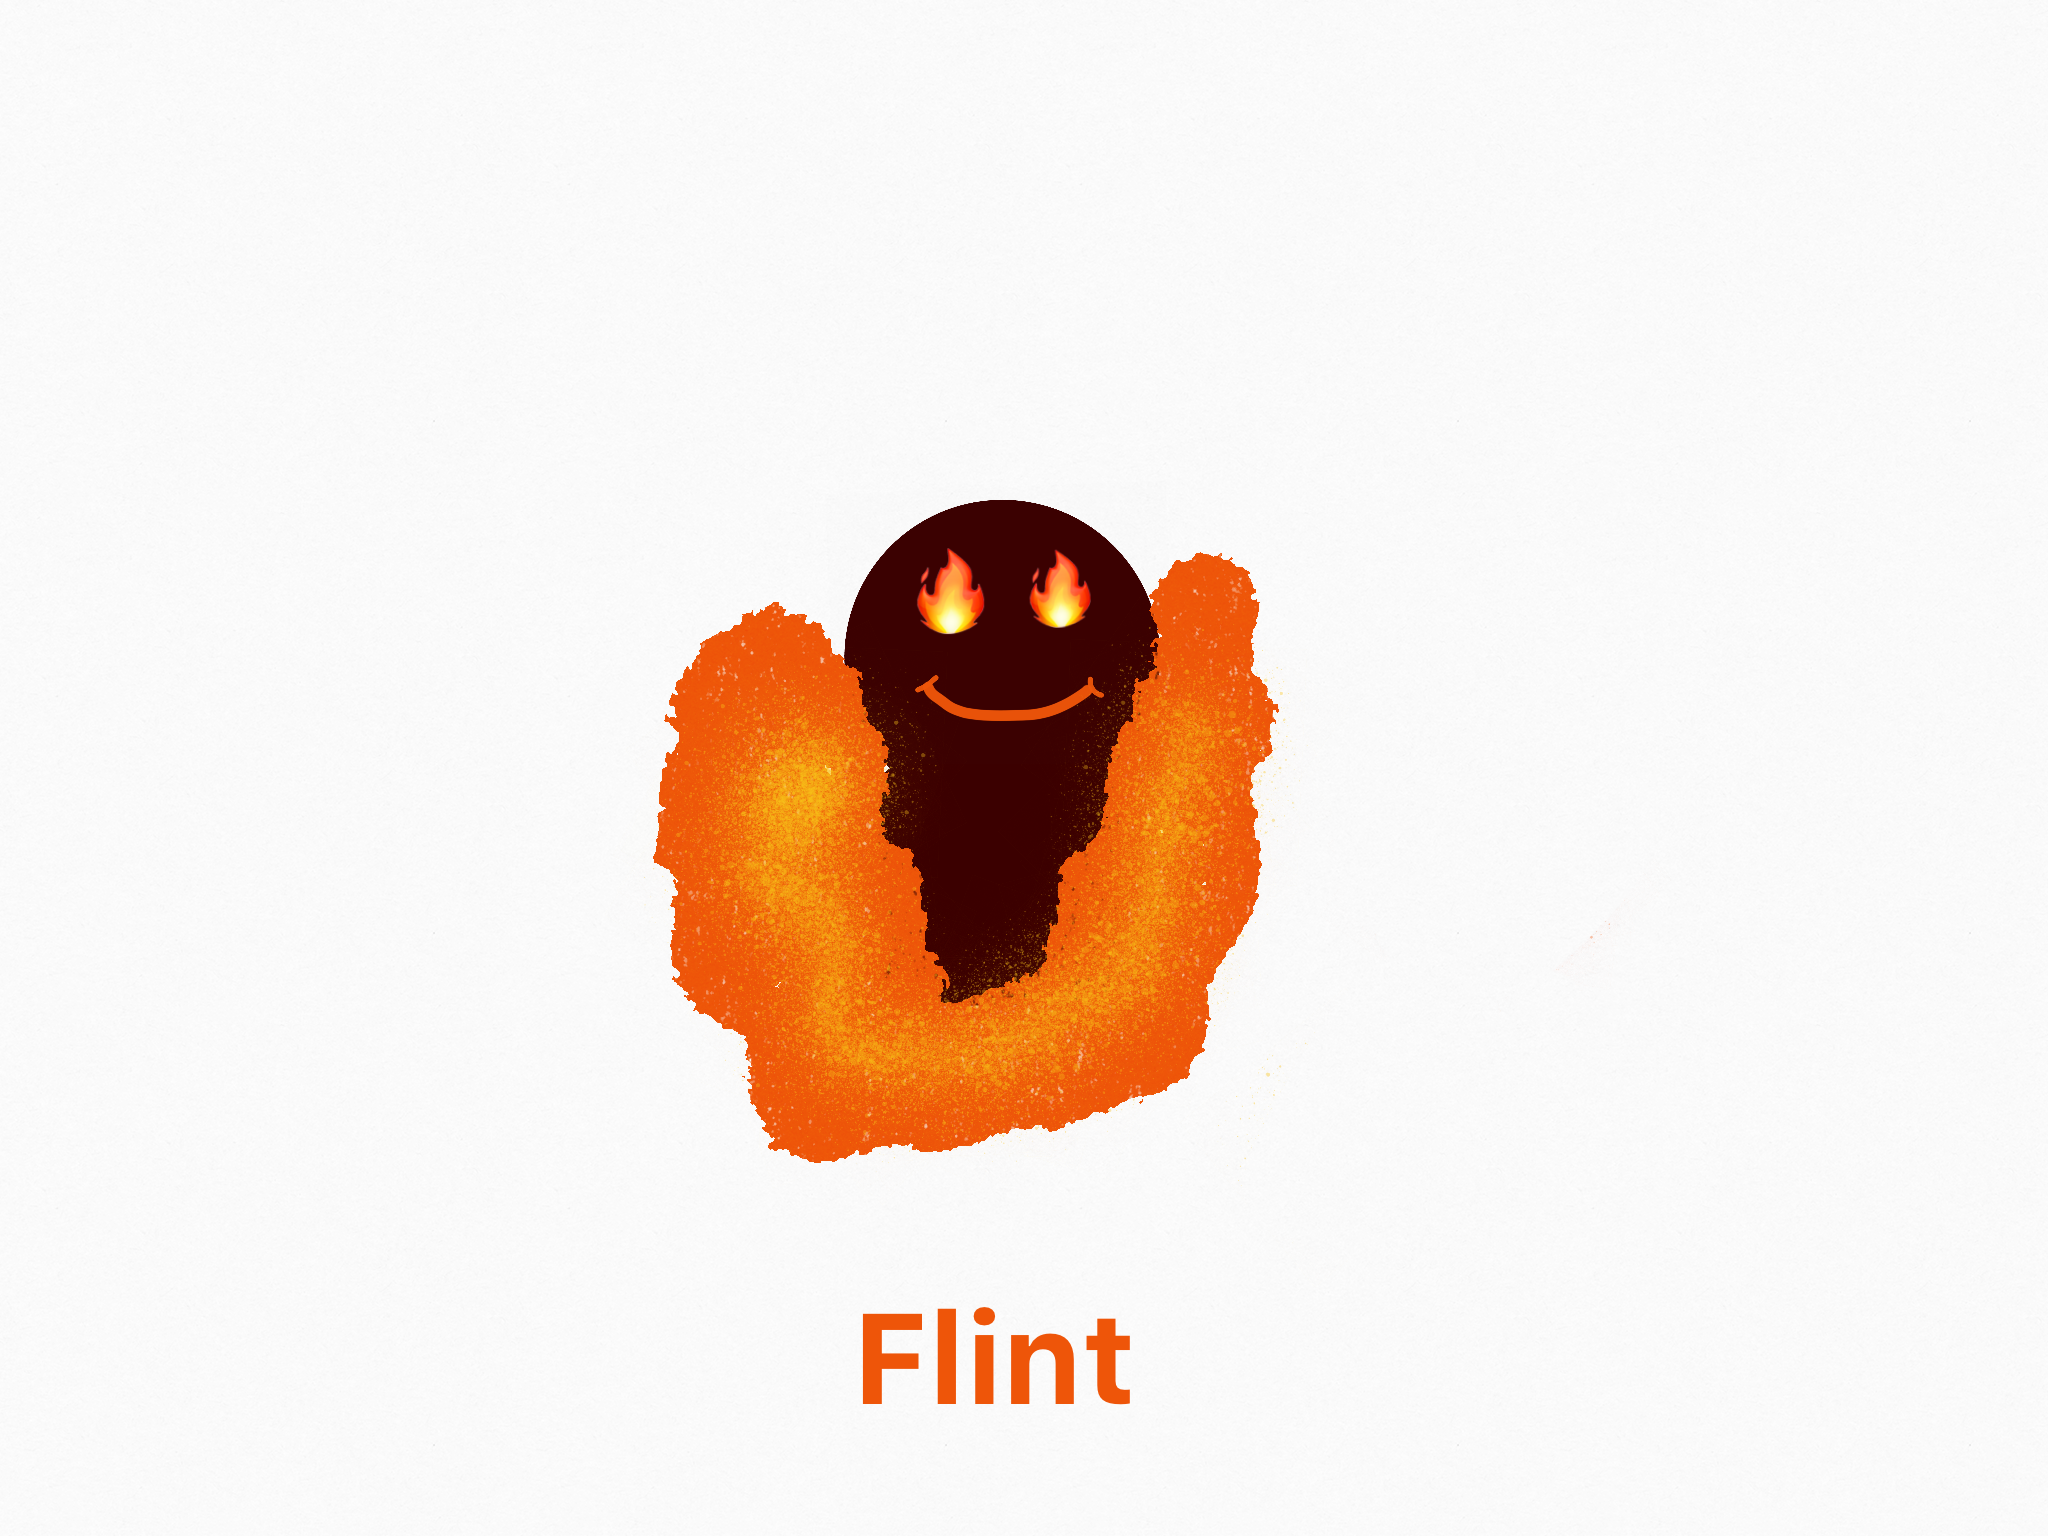 ZeldaFan643’s Flint Blank Meme Template